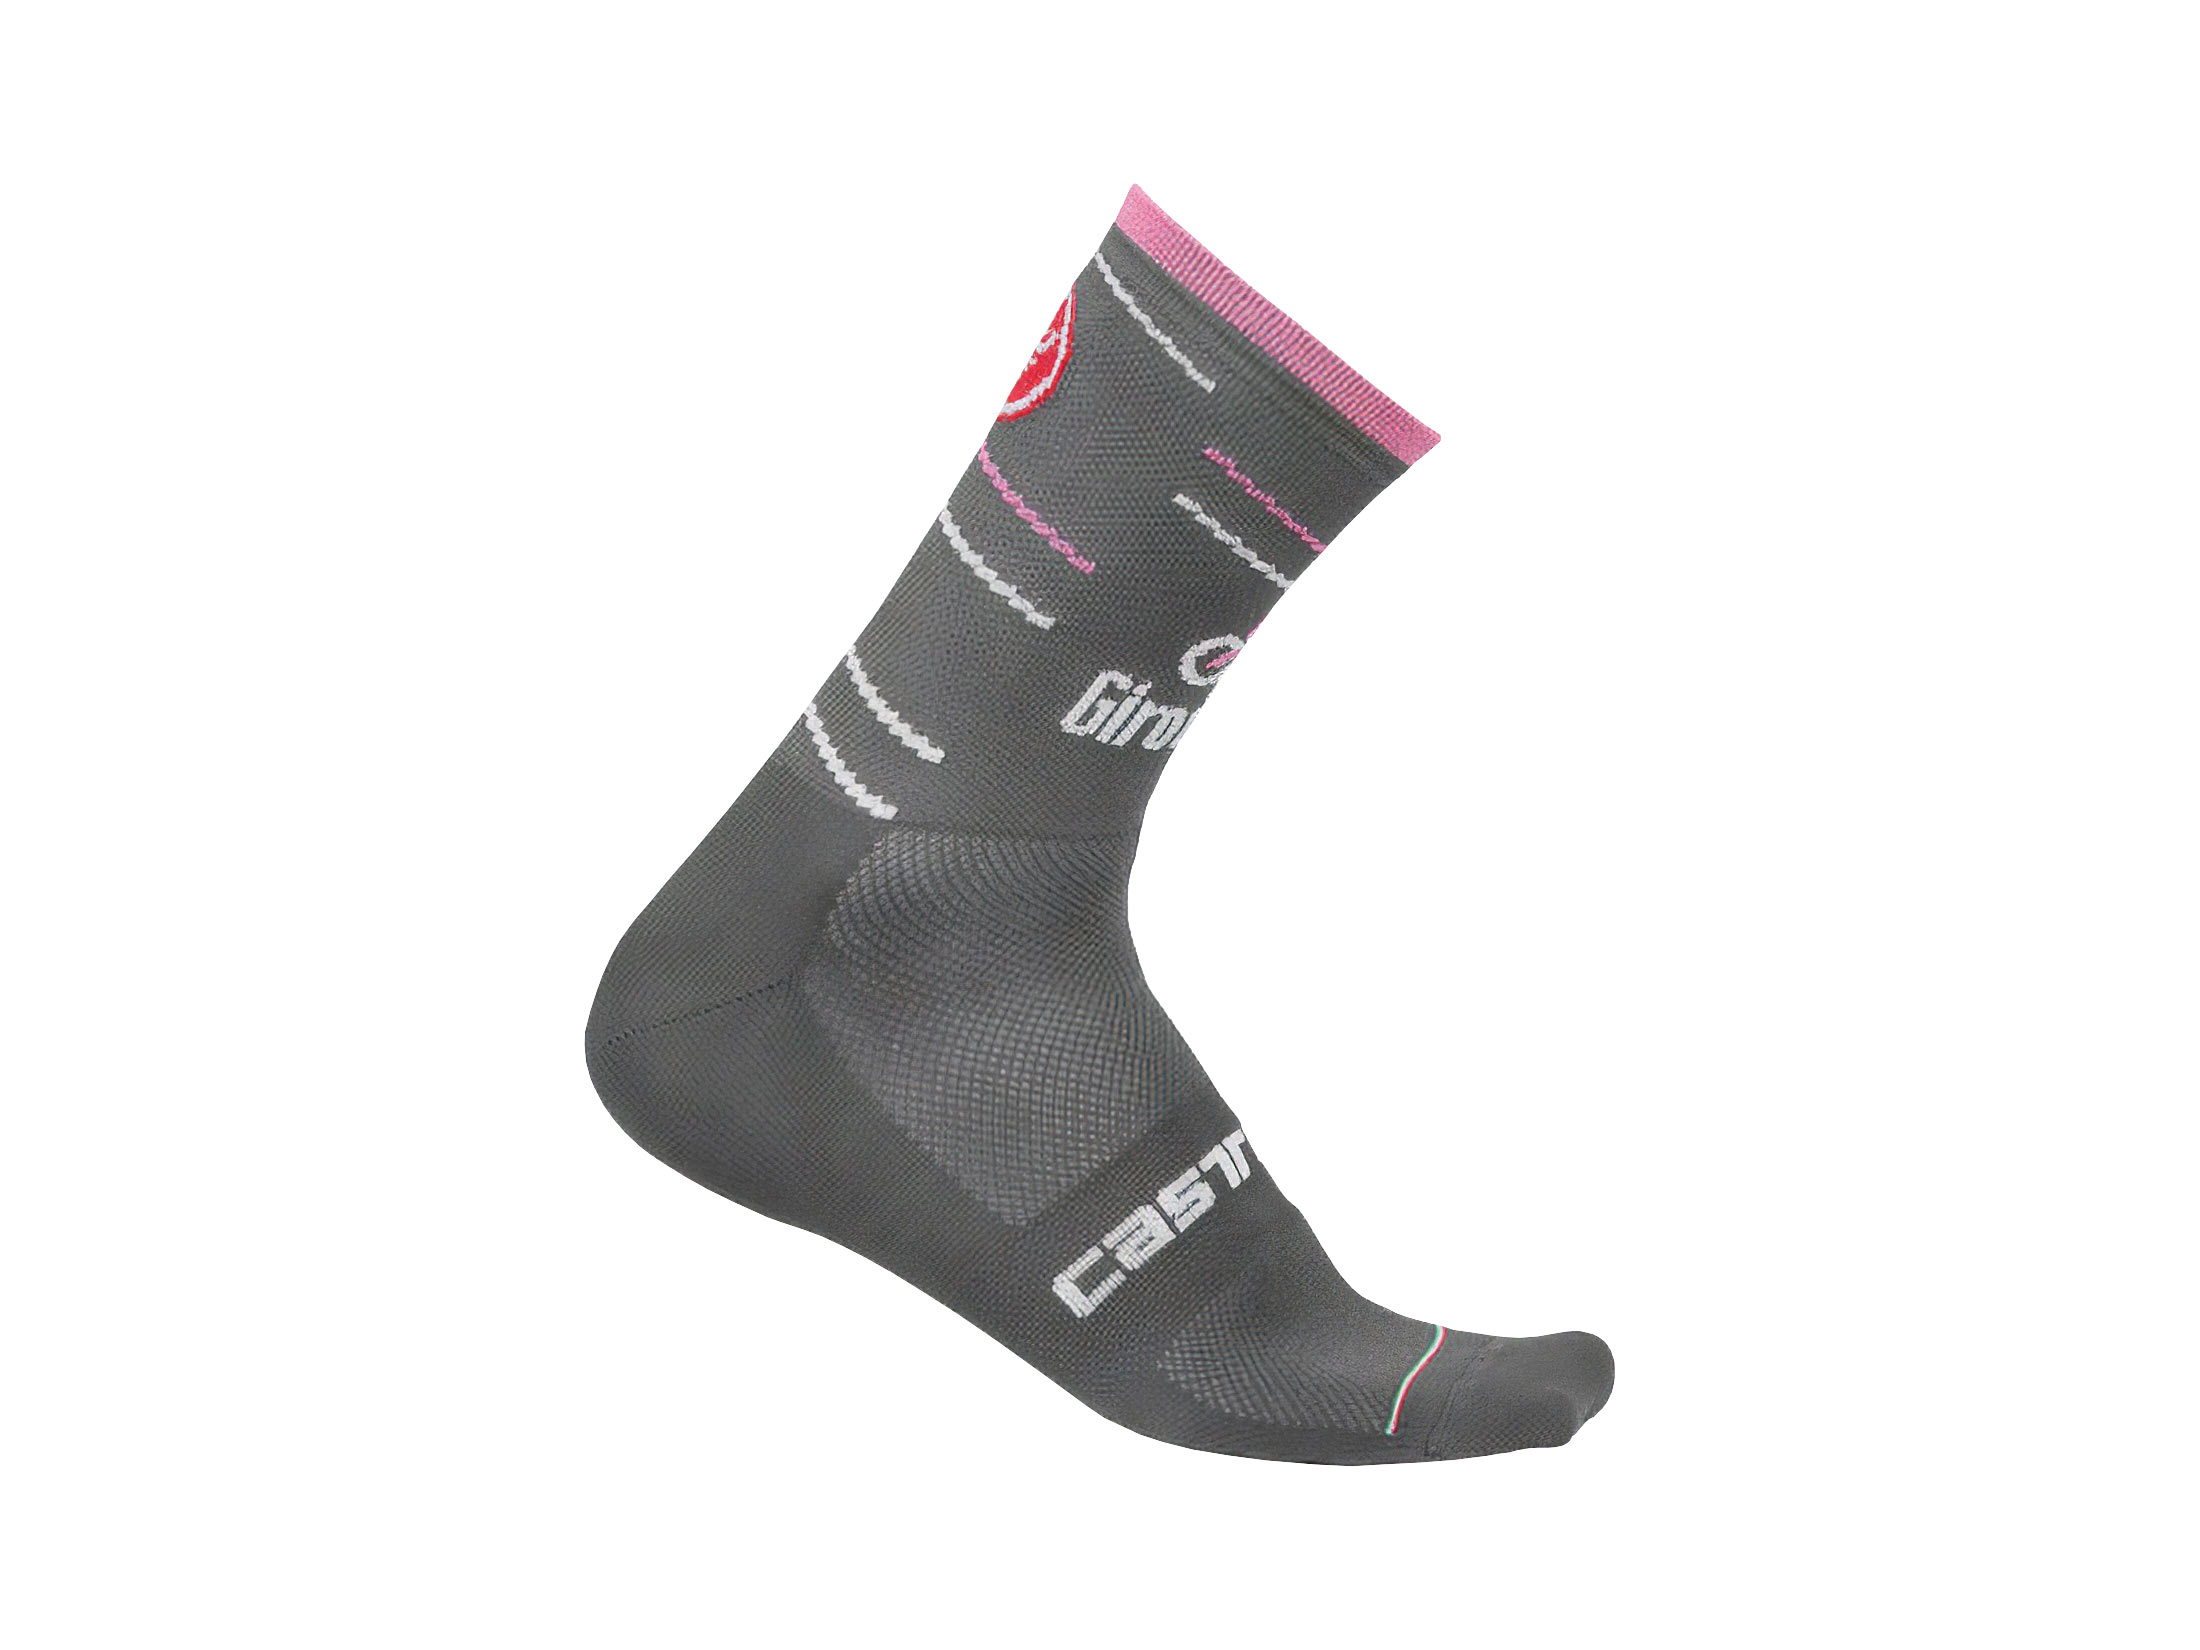 Κάλτσες Castelli Giro D'Italia 12 - Antracite/Rosa Giro